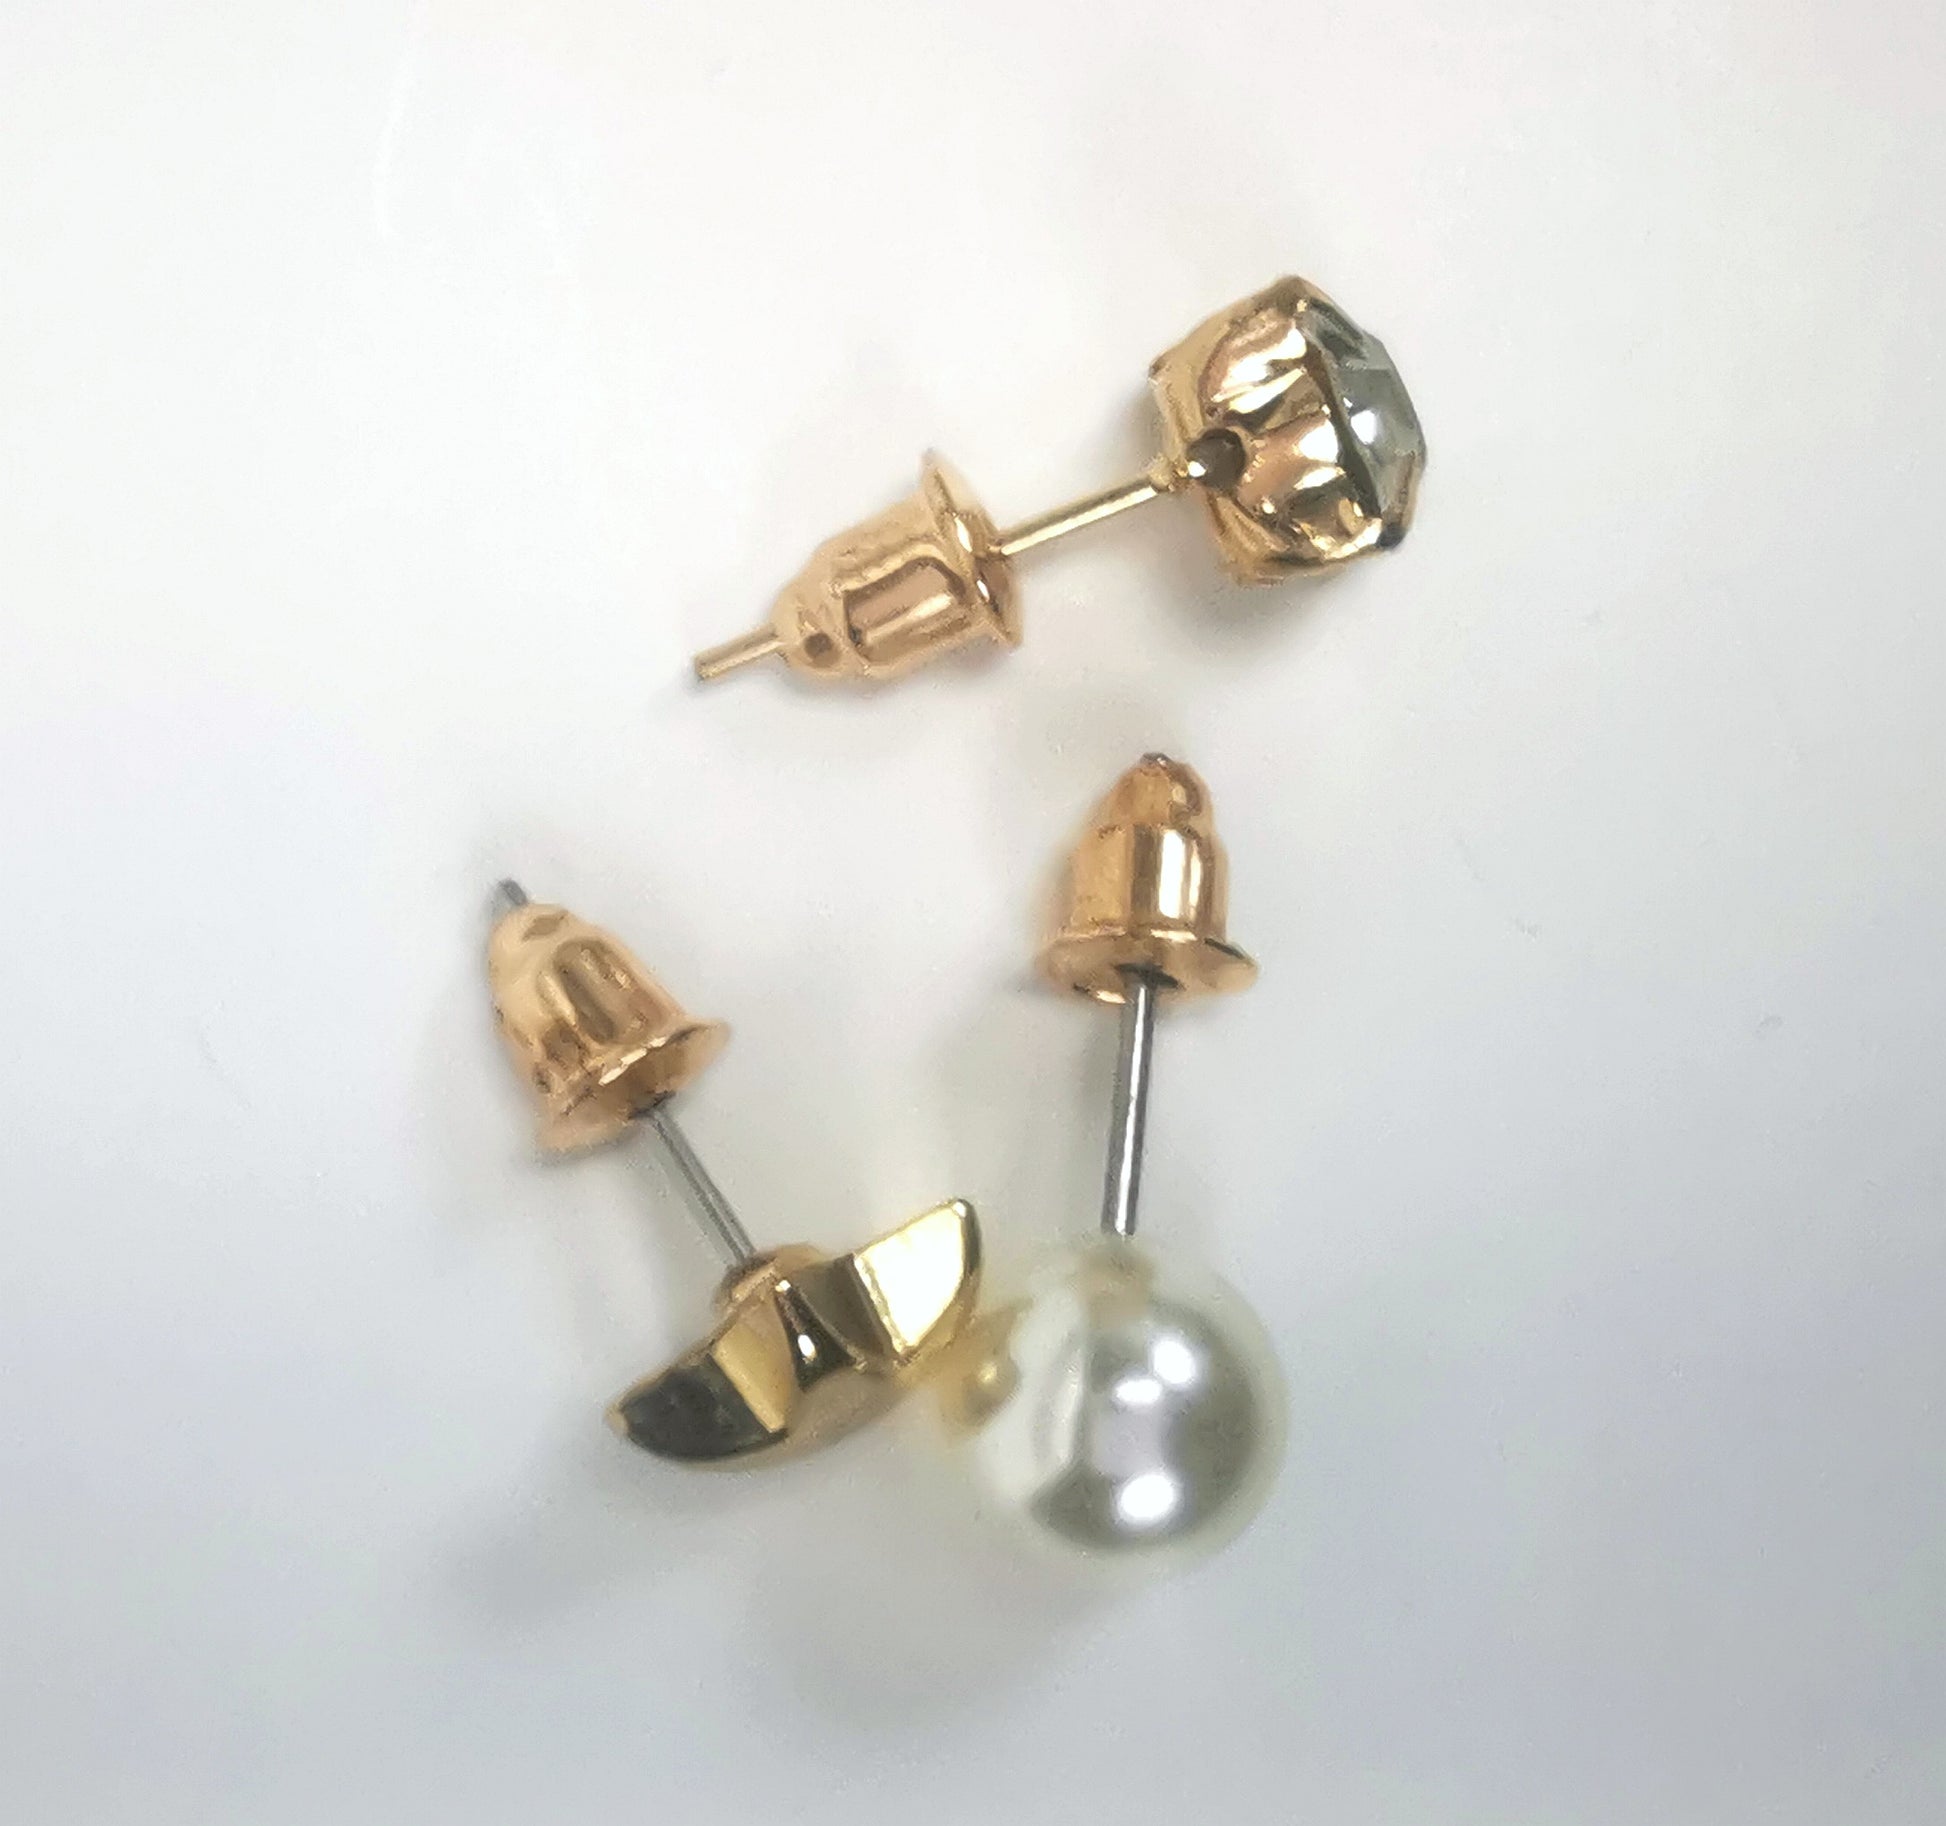 Trios de boucles d'oreilles clous fantaisie dorées, la première est une étoile dorée, la deuxième un faux diamant en strass et la troisième une perles fantaisie blanche, les trois de 7mm. Représentées par une boucle de chaque paire, posées en triangle, posées sur un fond blanc, vue de dessus.